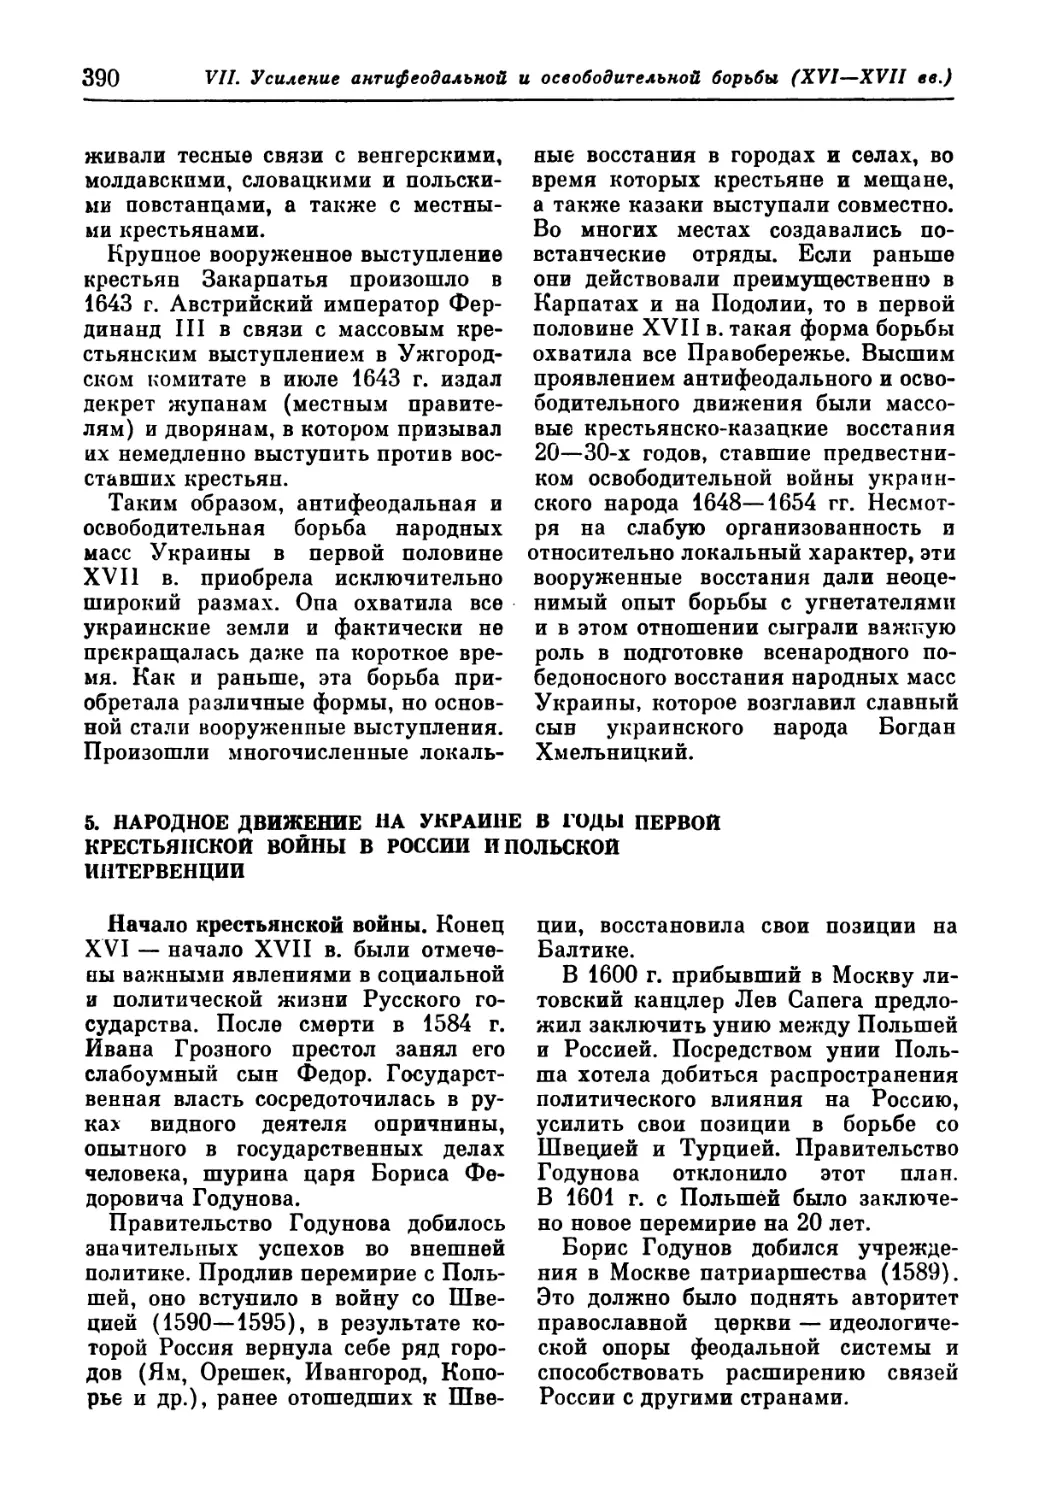 5. Народное движение на Украине в годы первой крестьянской войны в России и польской интервенции